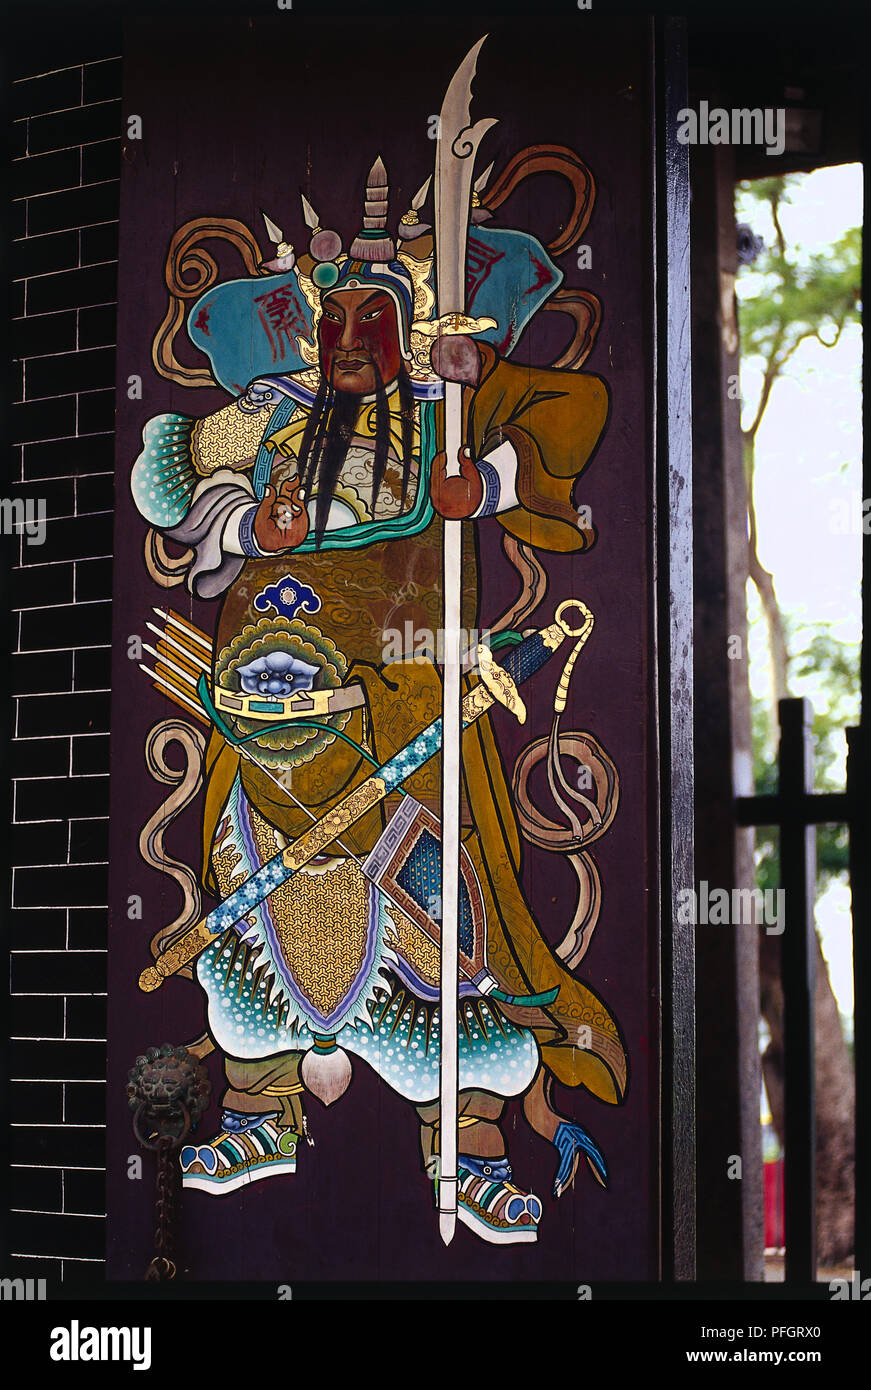 Hong Kong, les Nouveaux Territoires, guerrier chinois peint sur porte à Tang Chung Ling Temple Ancestral Banque D'Images